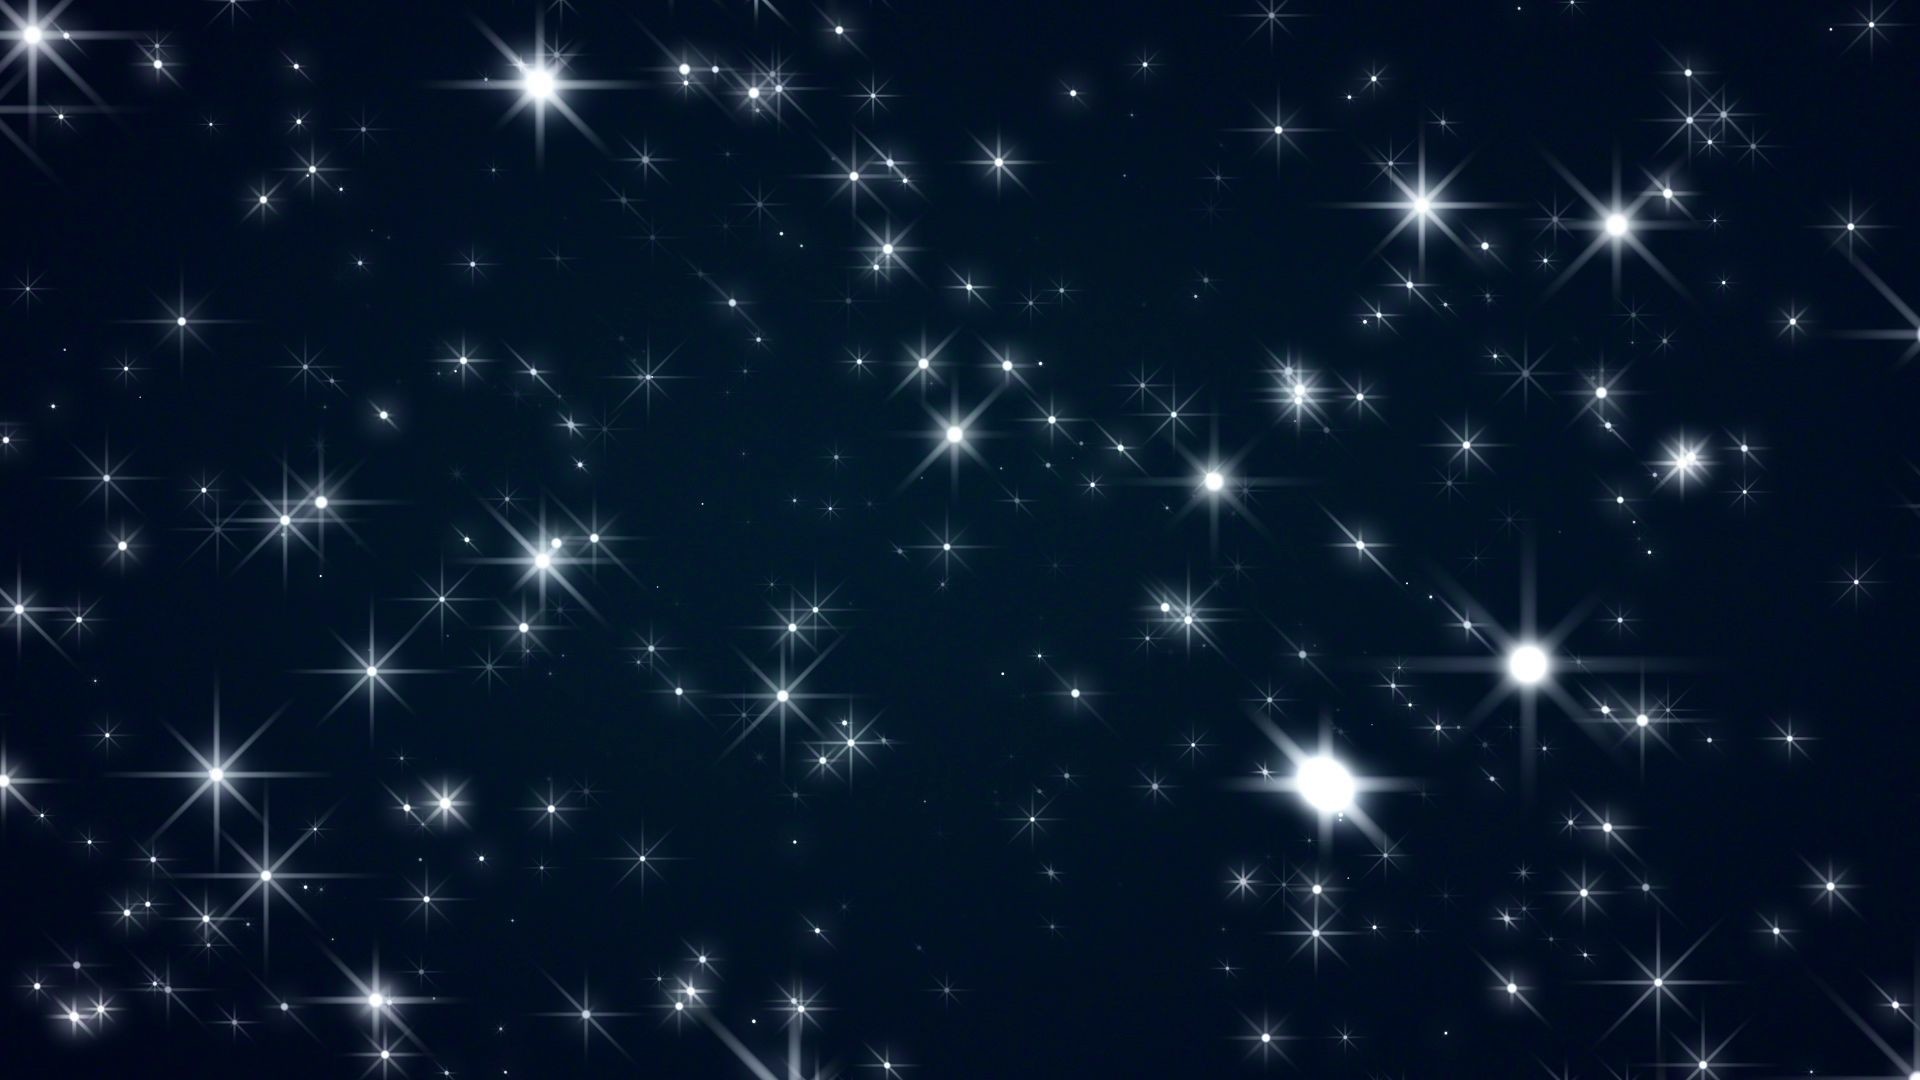 1920x1080 'Starflight 1' - Moving Stars And Christmas Motion Background  Loop_SampleStill